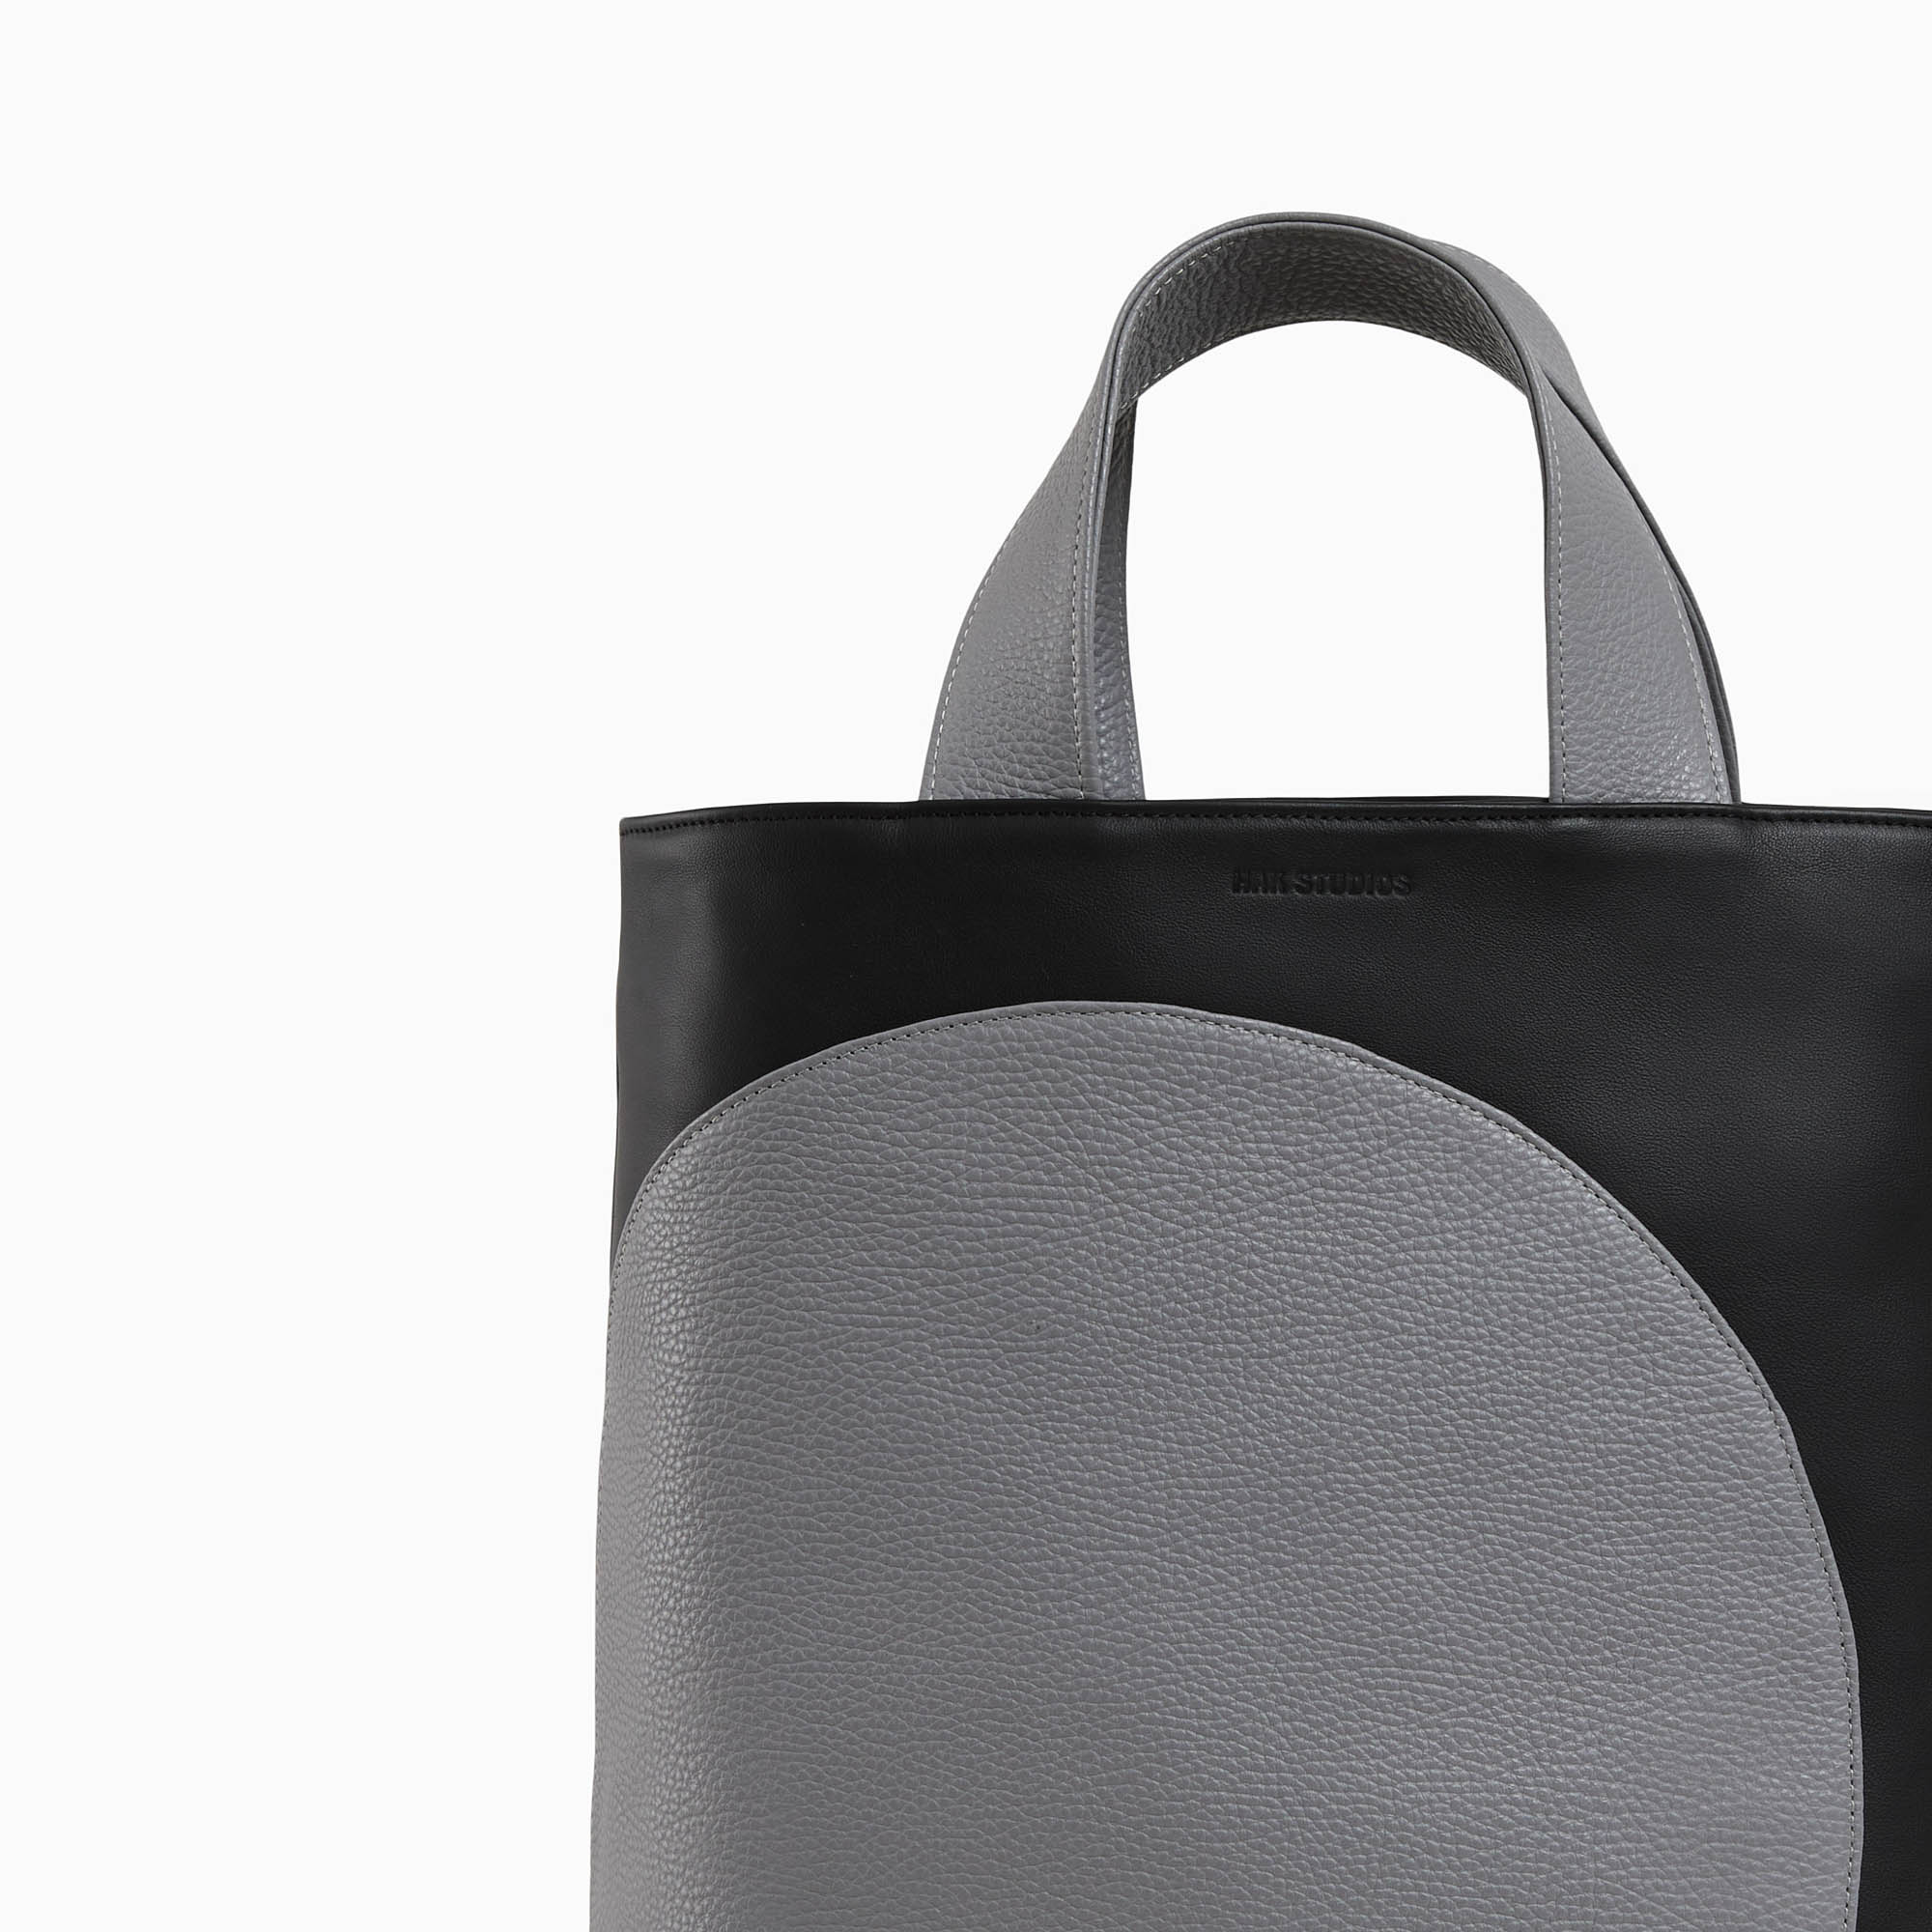 Leather handbag in black-gray color